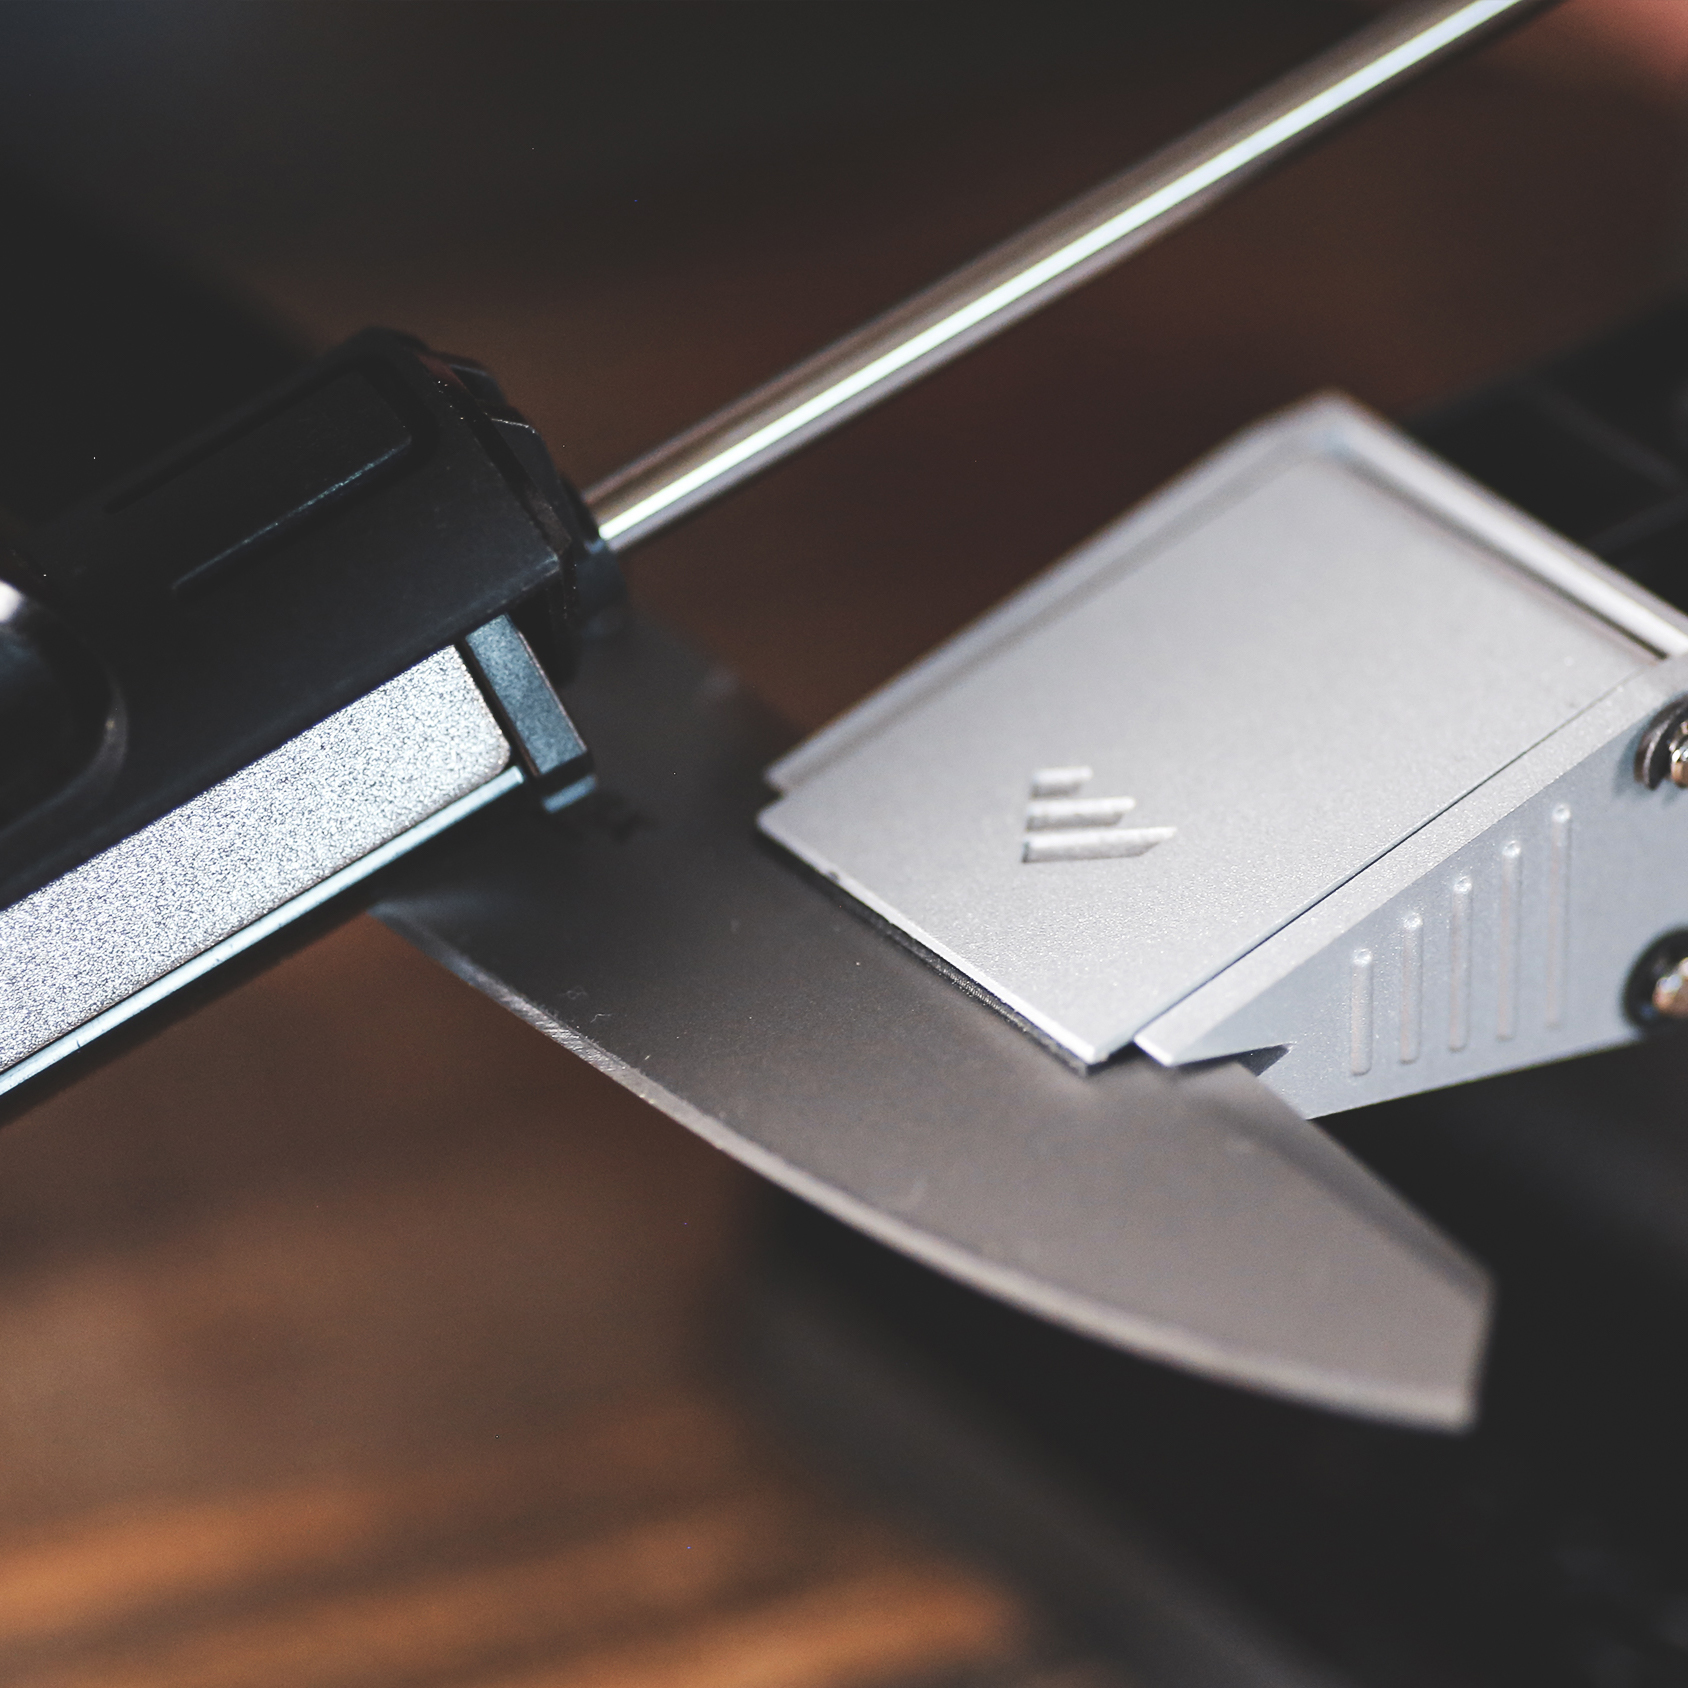 Precision Adjust Knife Sharpener™